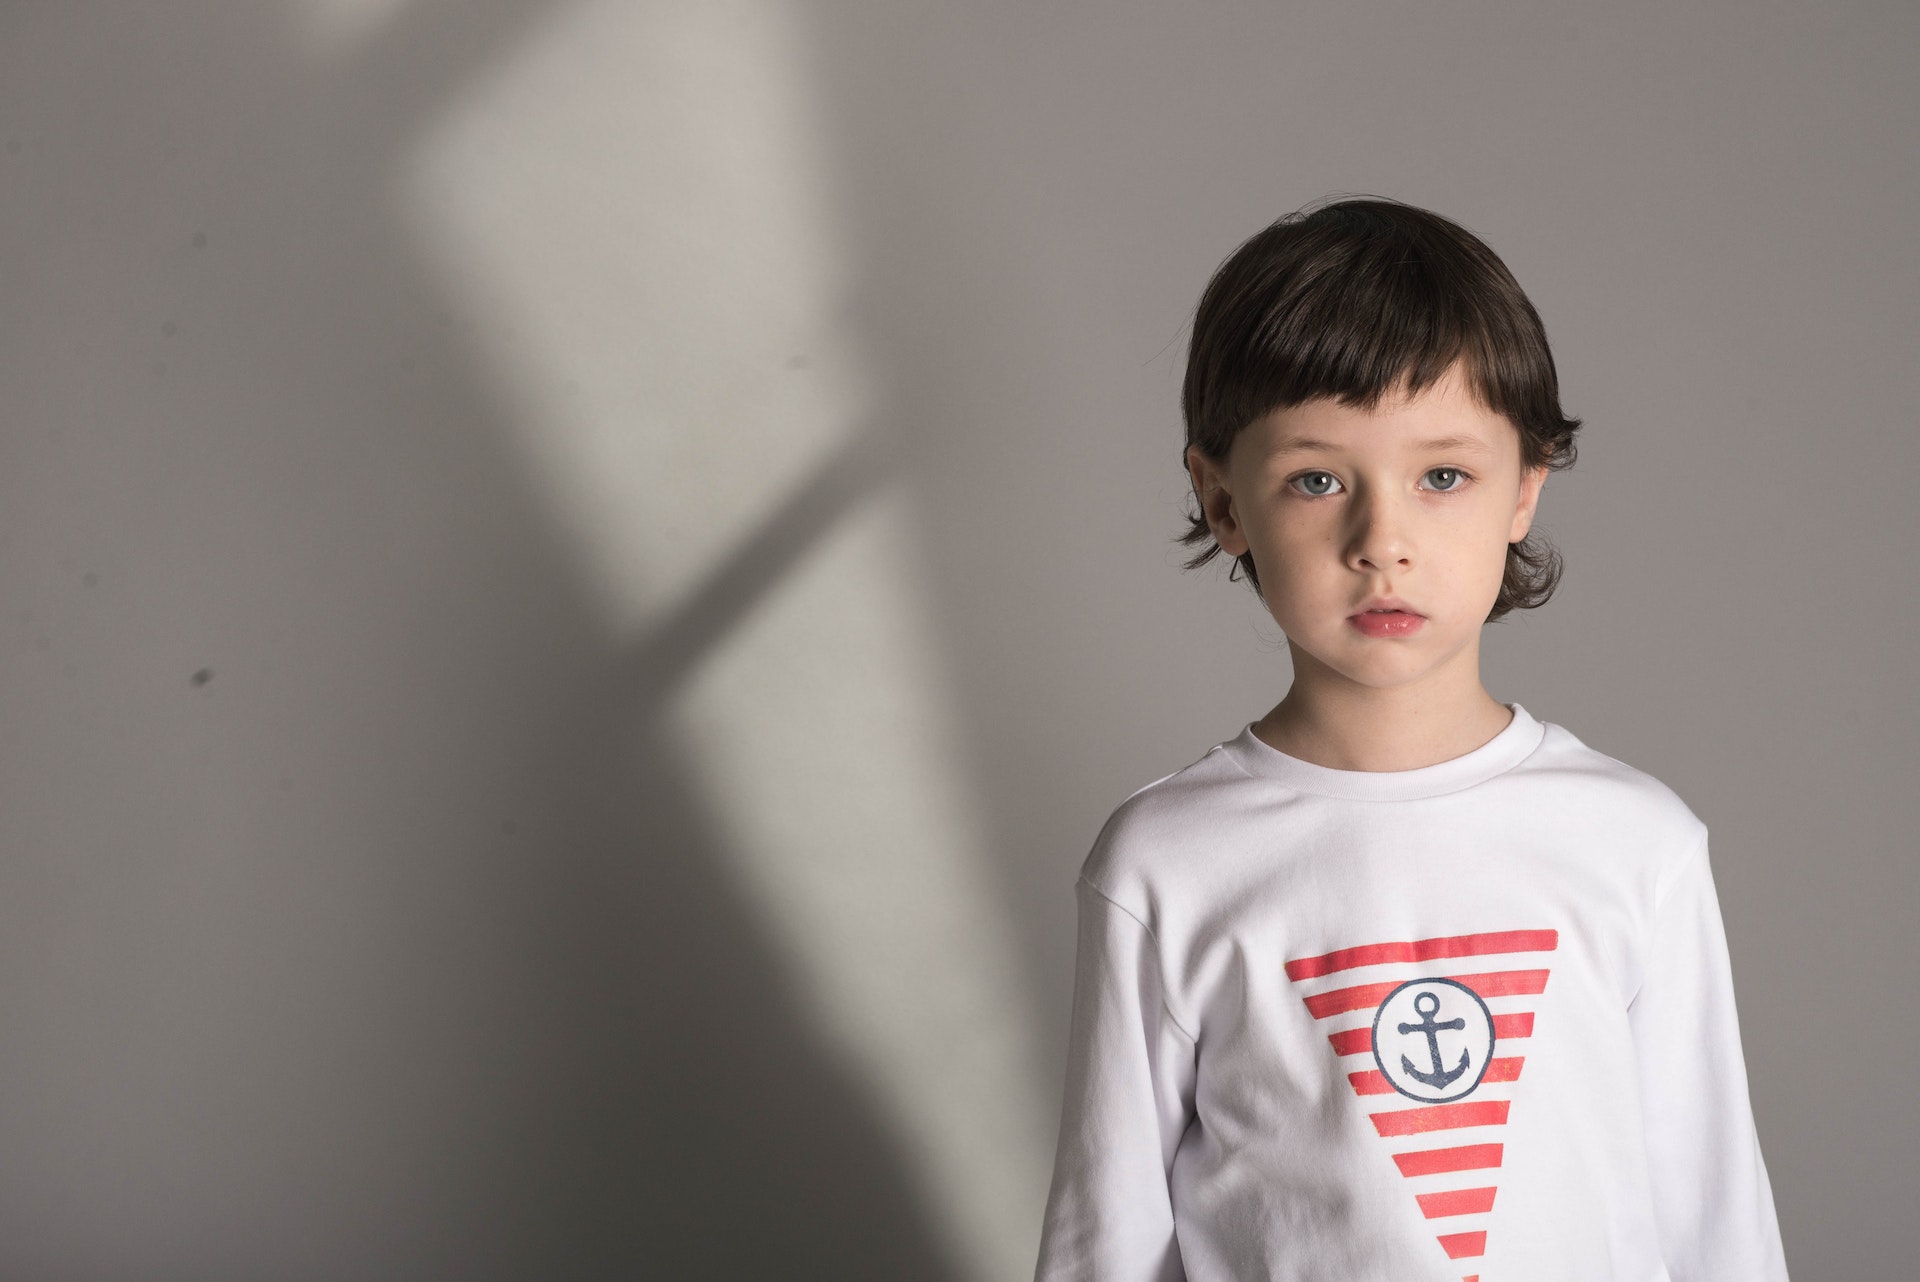 Ein kleiner Junge in einem weißen T-Shirt | Quelle: Pexels